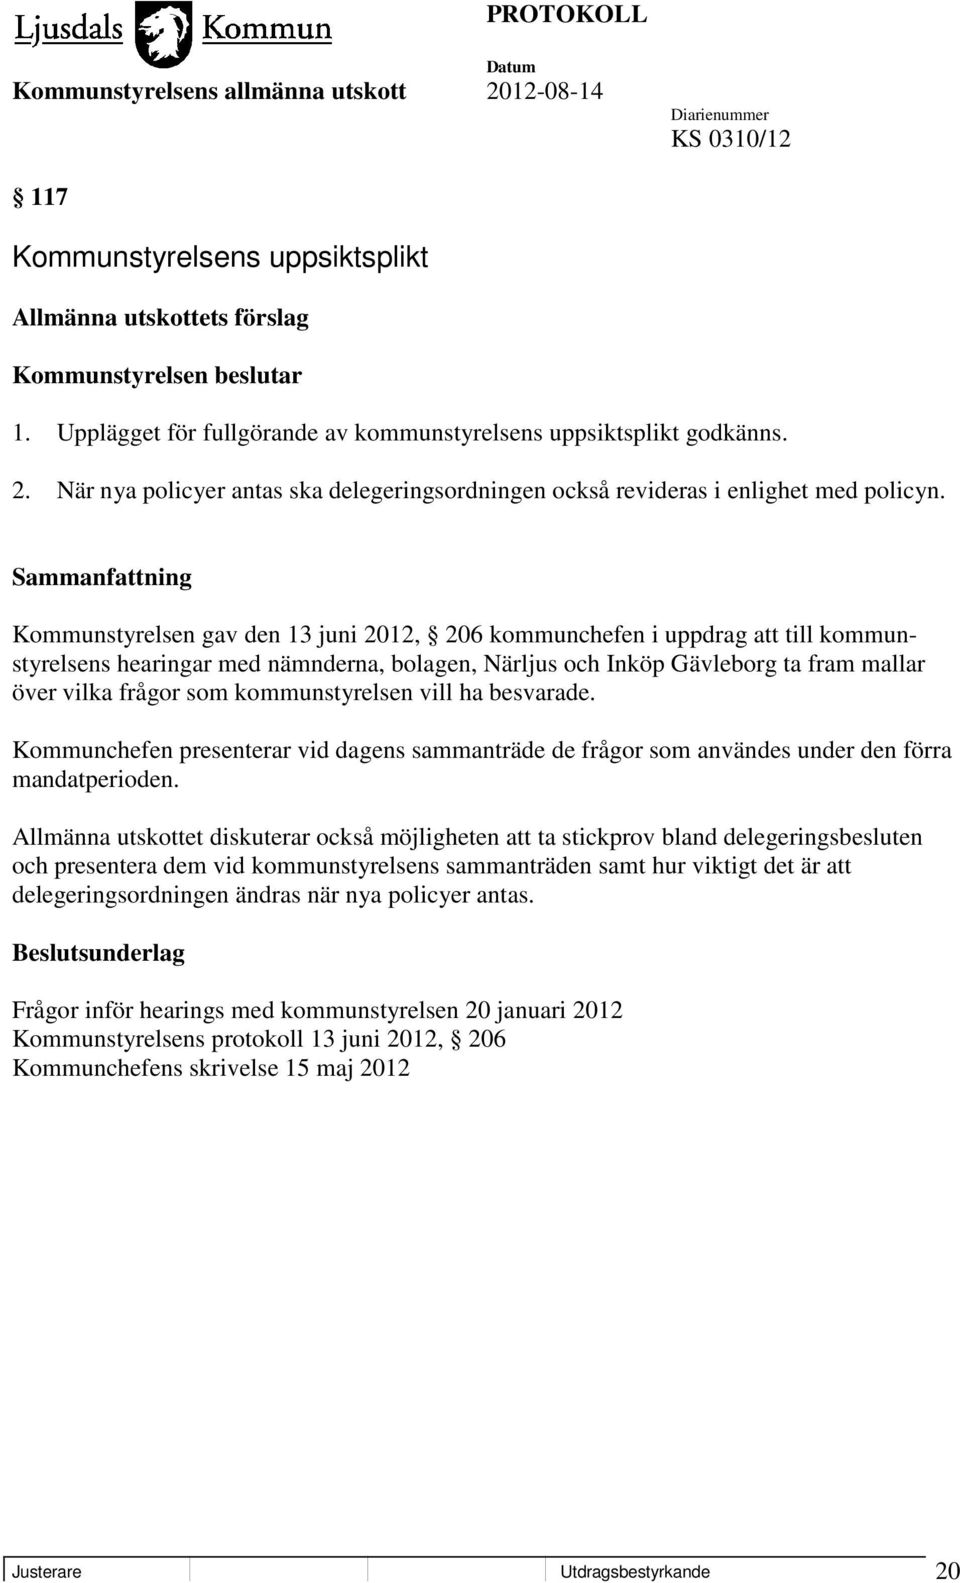 Kommunstyrelsen gav den 13 juni 2012, 206 kommunchefen i uppdrag att till kommunstyrelsens hearingar med nämnderna, bolagen, Närljus och Inköp Gävleborg ta fram mallar över vilka frågor som